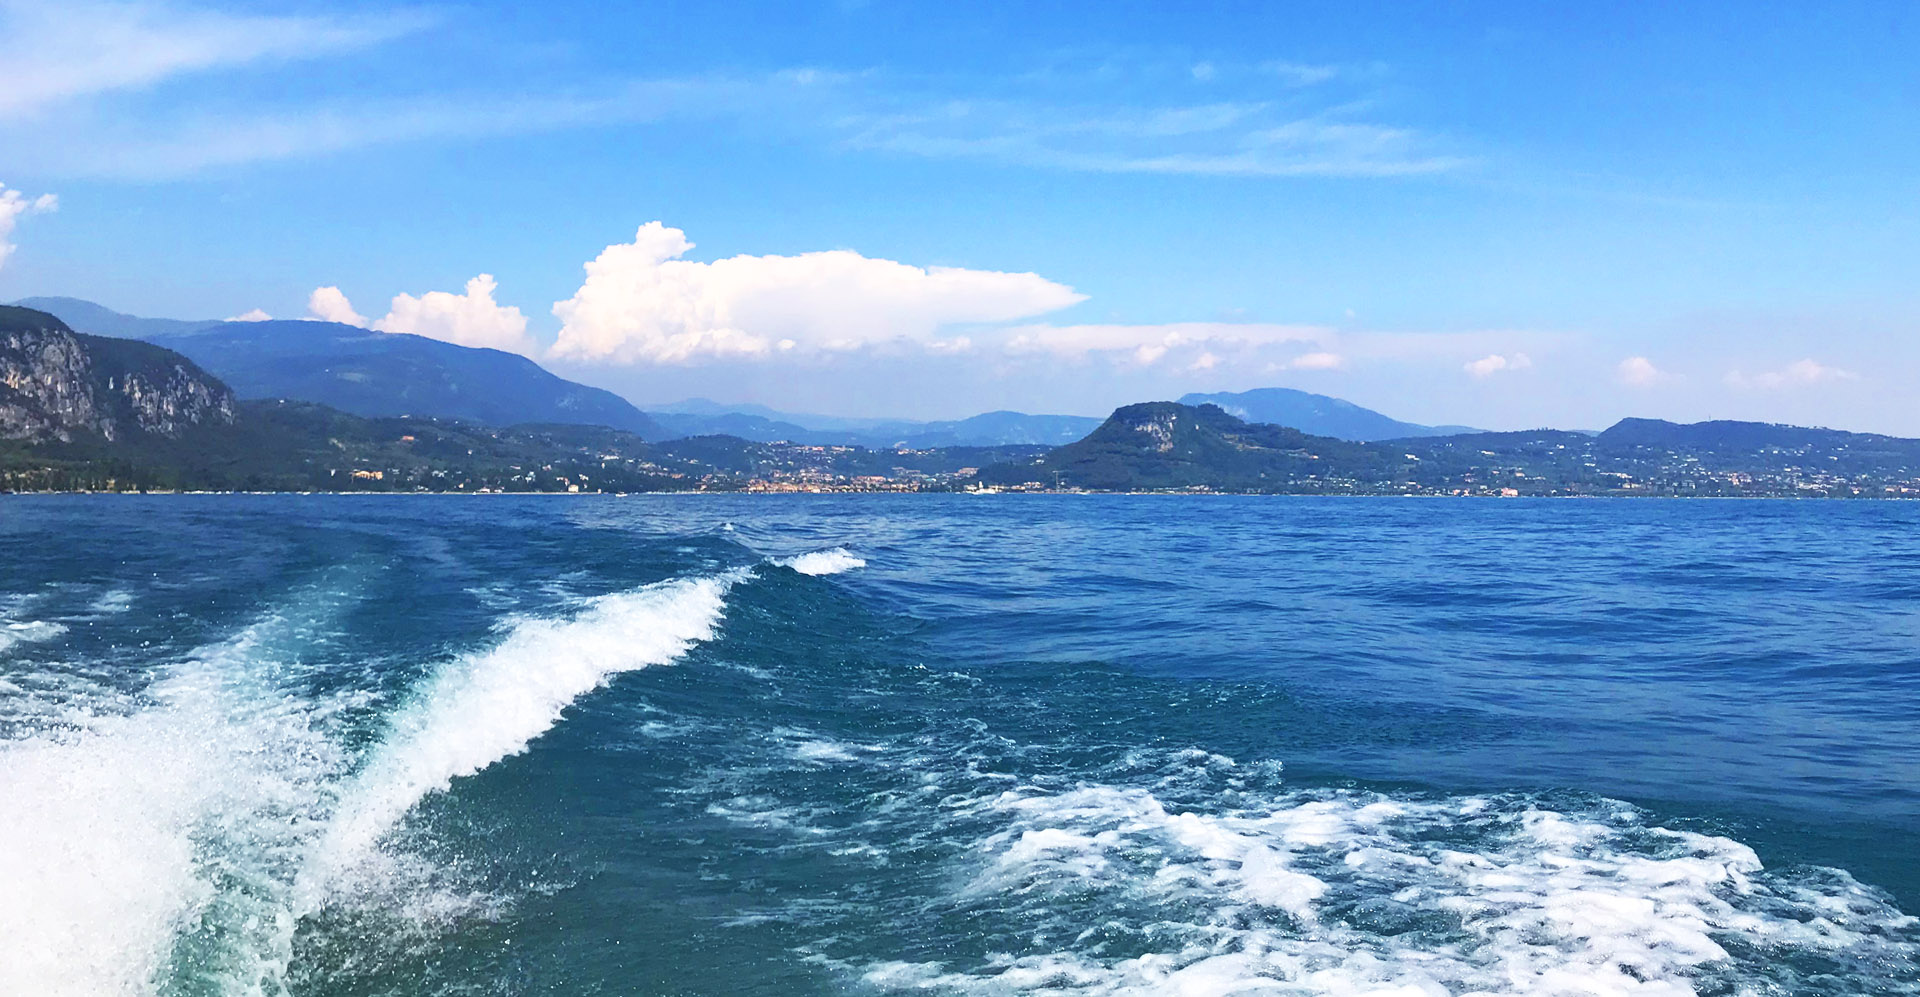 Full day boat tour on Lake Garda